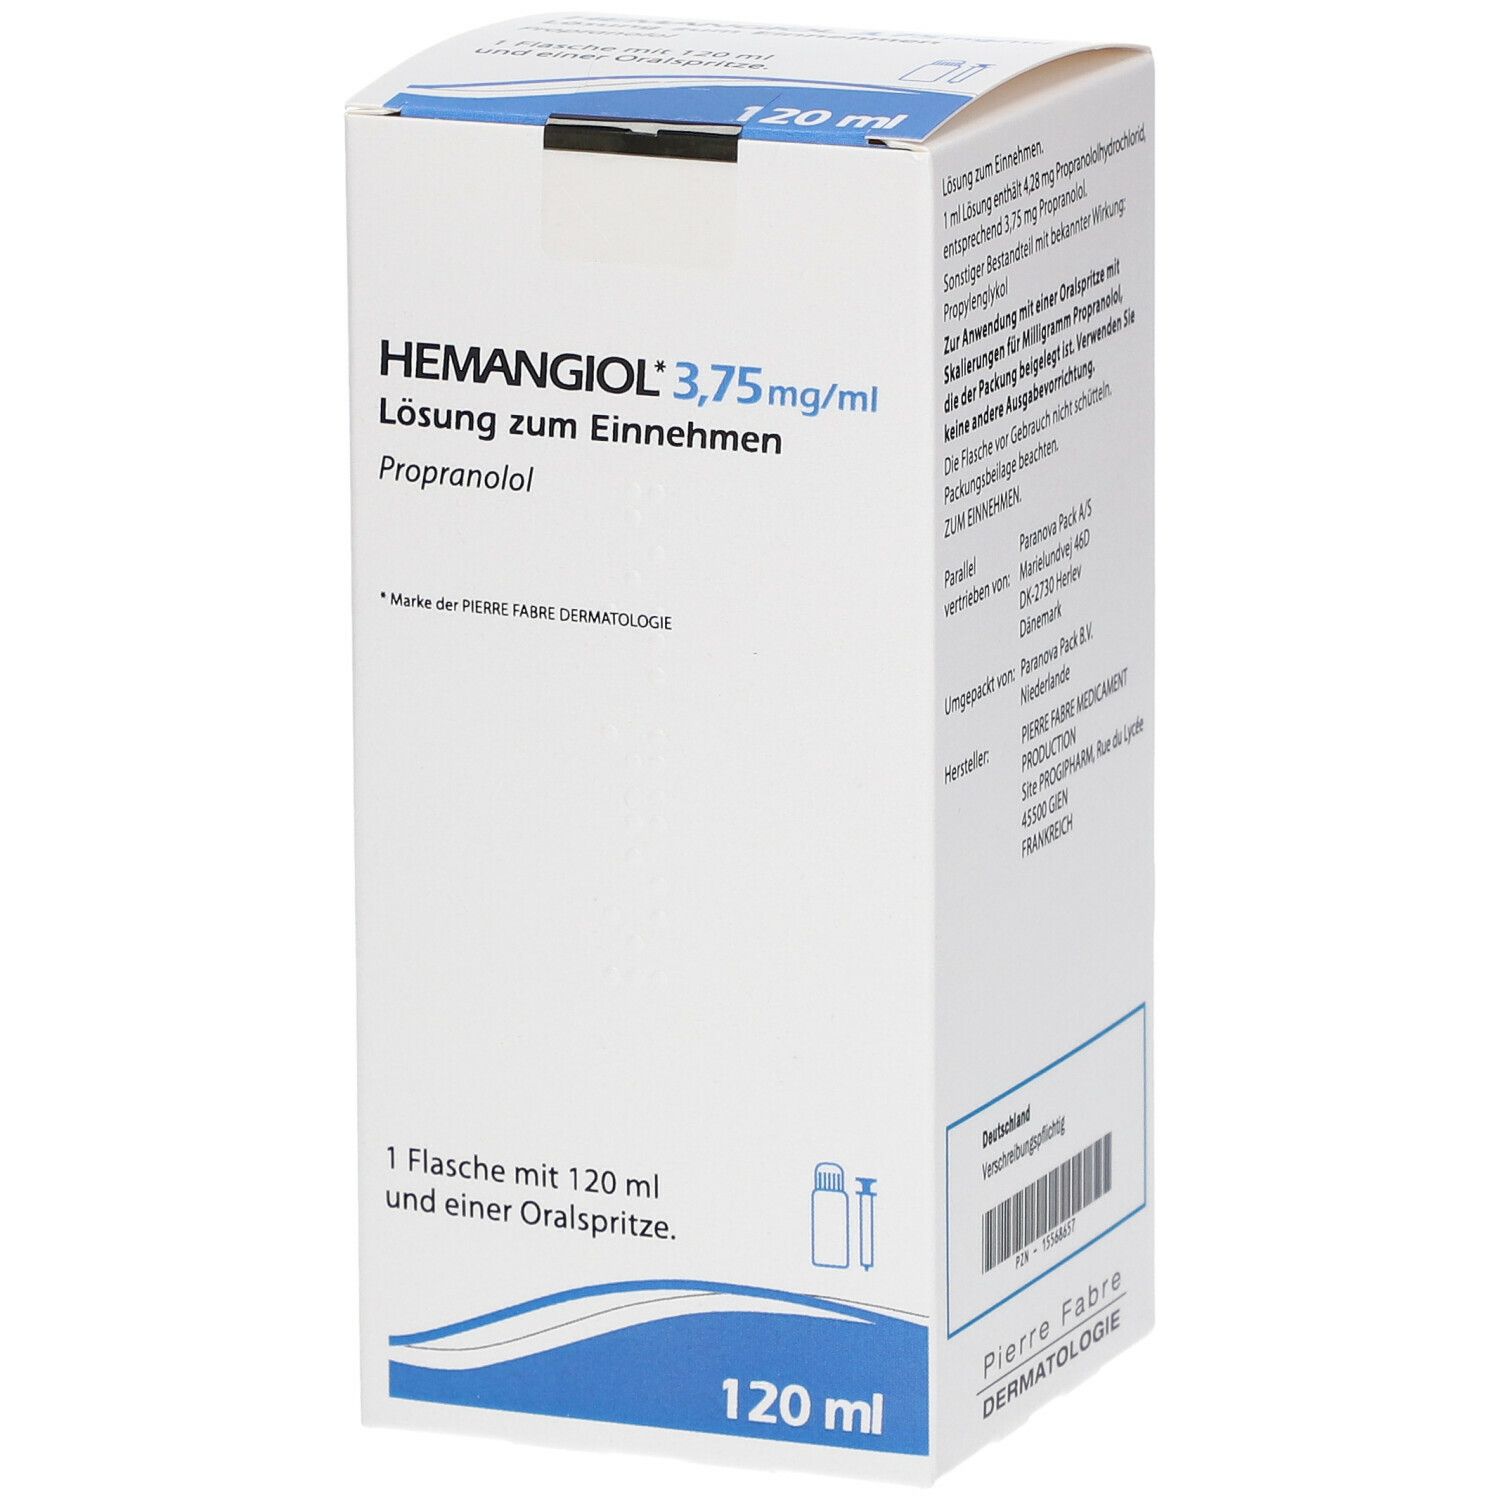 Hemangiol 3,75 mg/ml